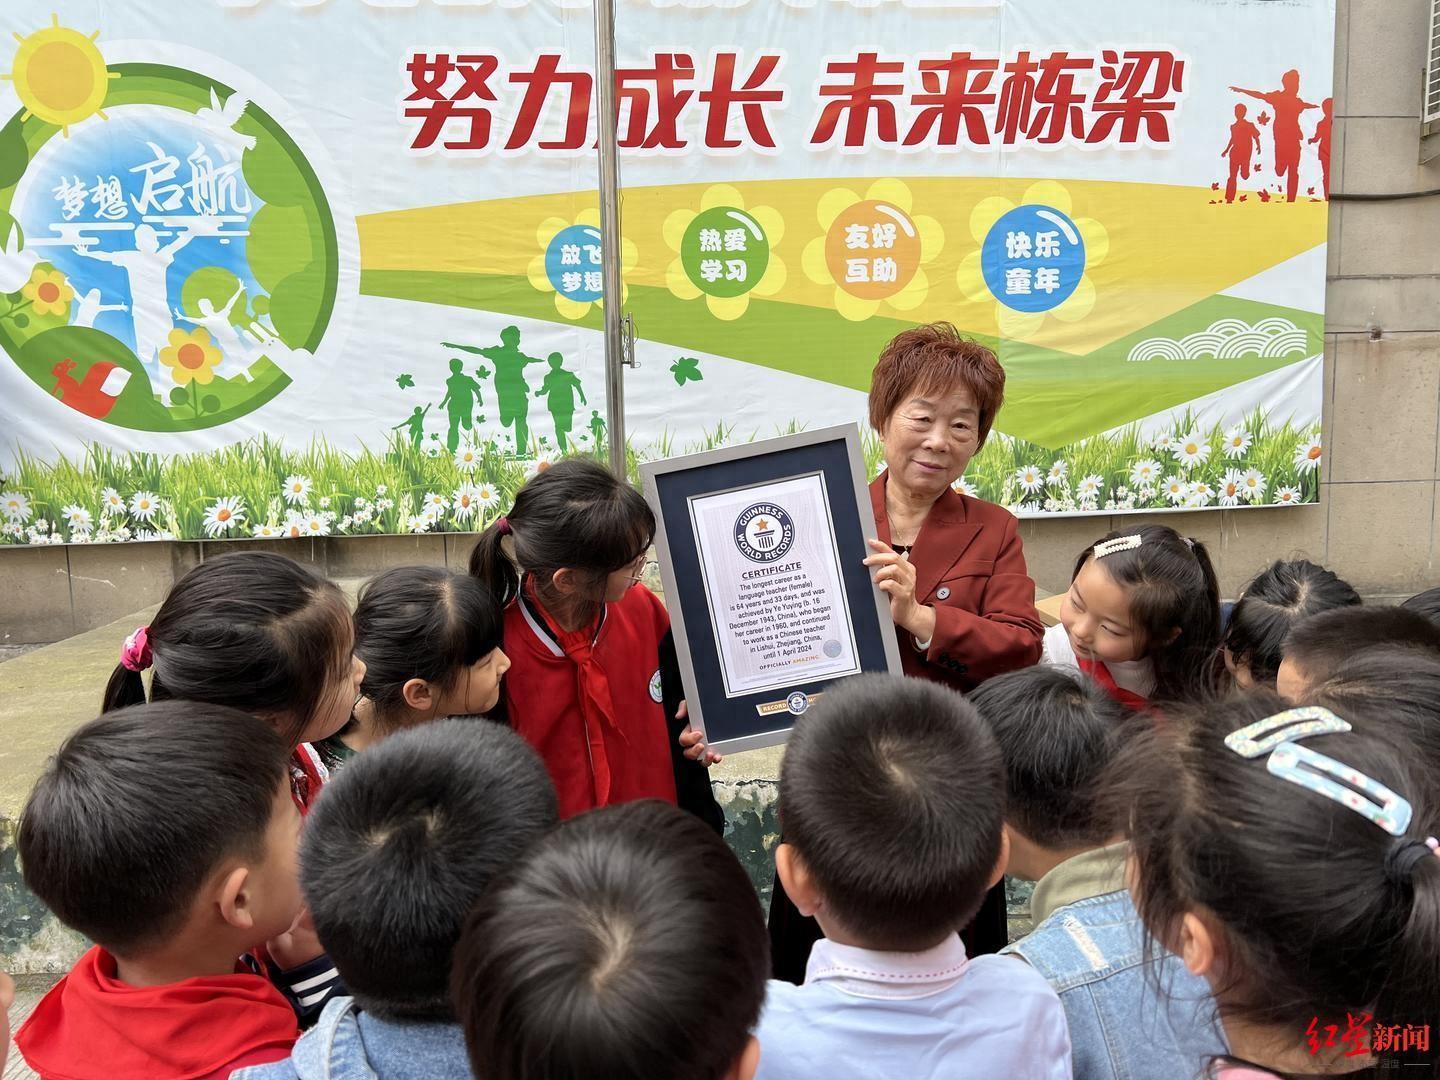 执教超64年！浙江80岁语文教师获吉尼斯世界纪录认证“最长职业生涯的语言教师”